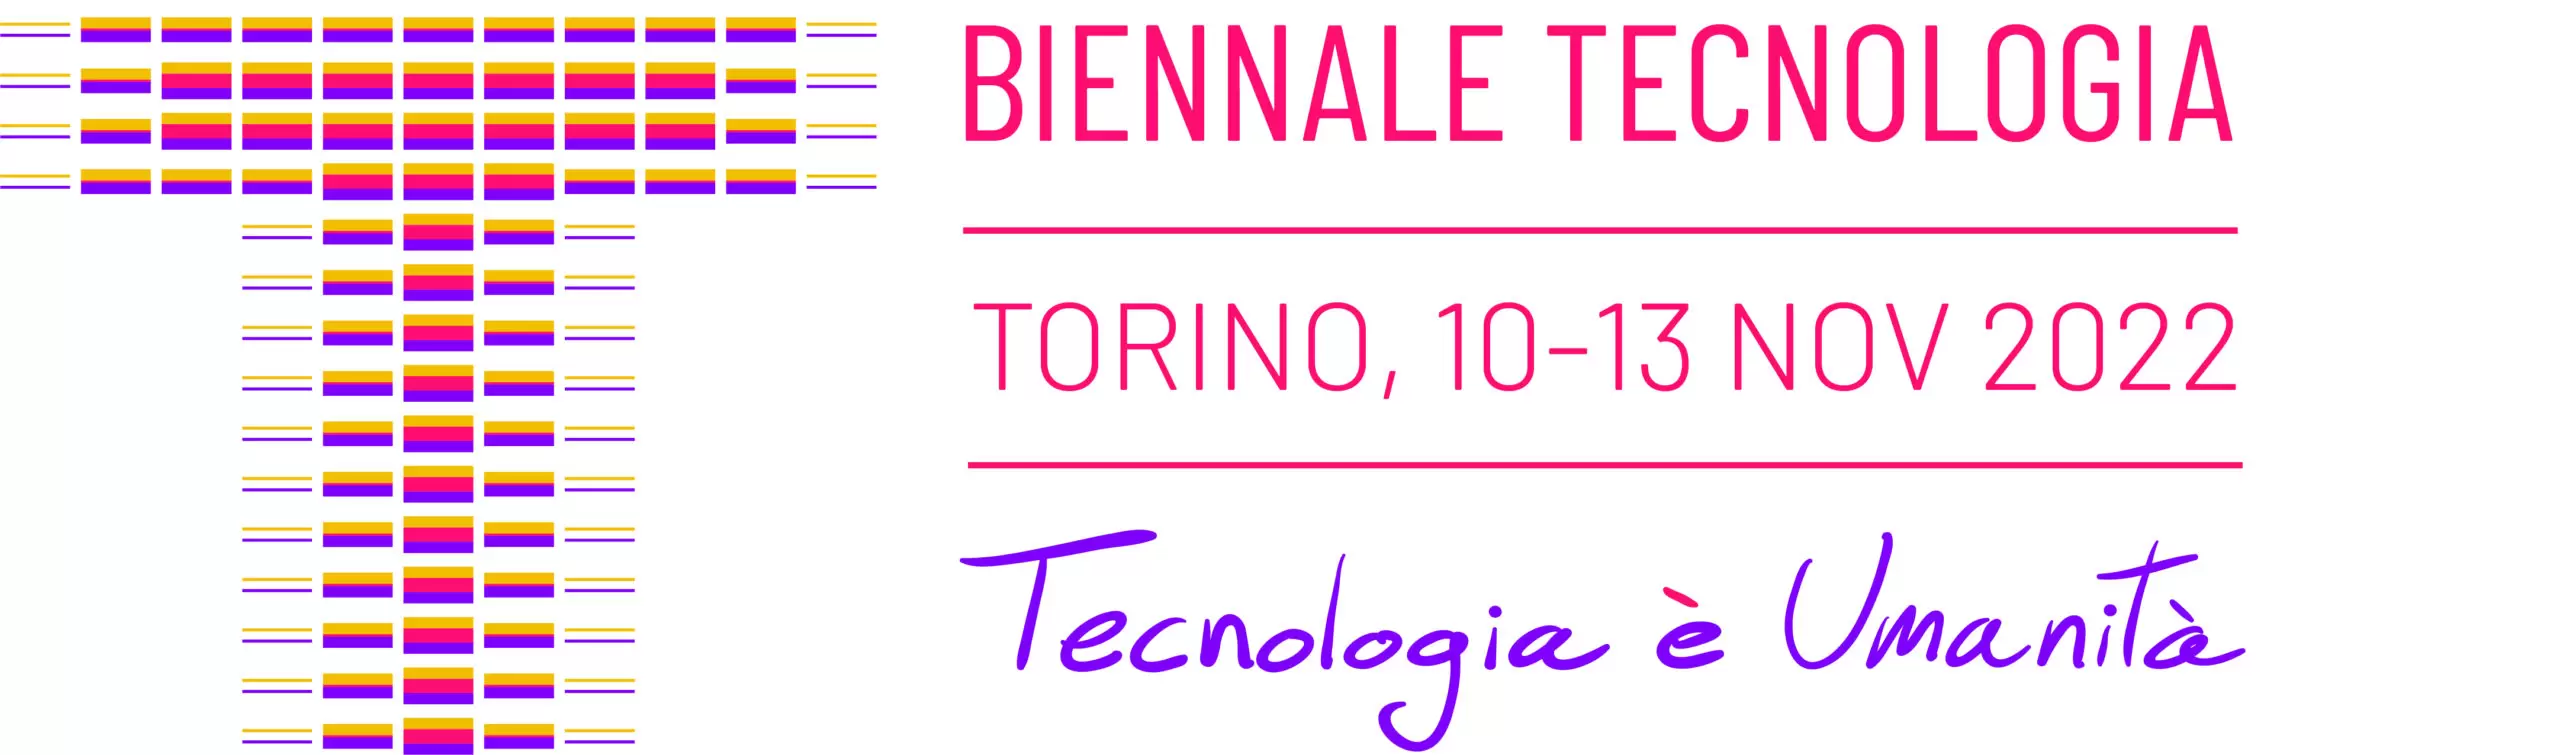 Biennale Tecnologia Torino, Costruire per le generazioni